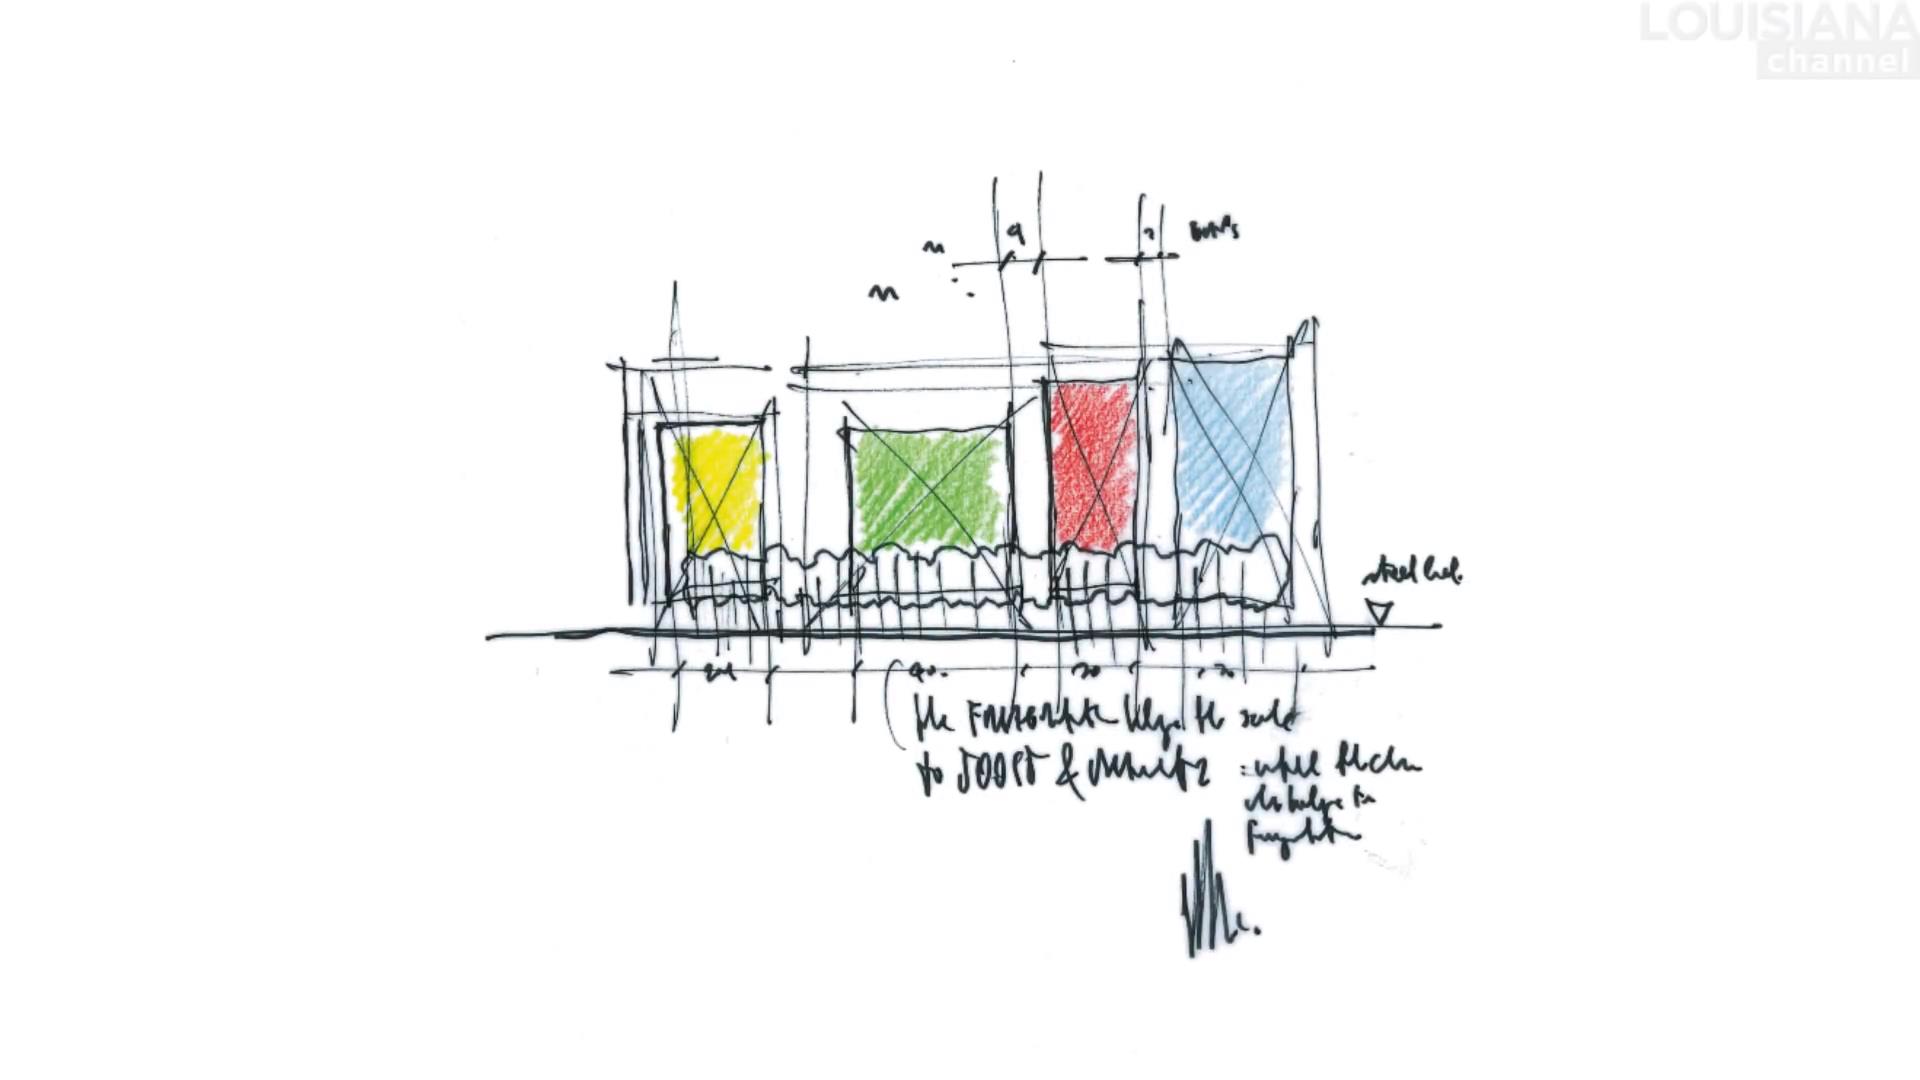 倫佐·皮亞諾,Renzo Piano,倫佐·皮亞諾作品,建築大師視頻,倫佐·皮亞諾訪談,普利茲克獎建築大師,蓬皮杜藝術中心,日本關西國際機場,提巴歐文化中心,波茨坦廣場改造